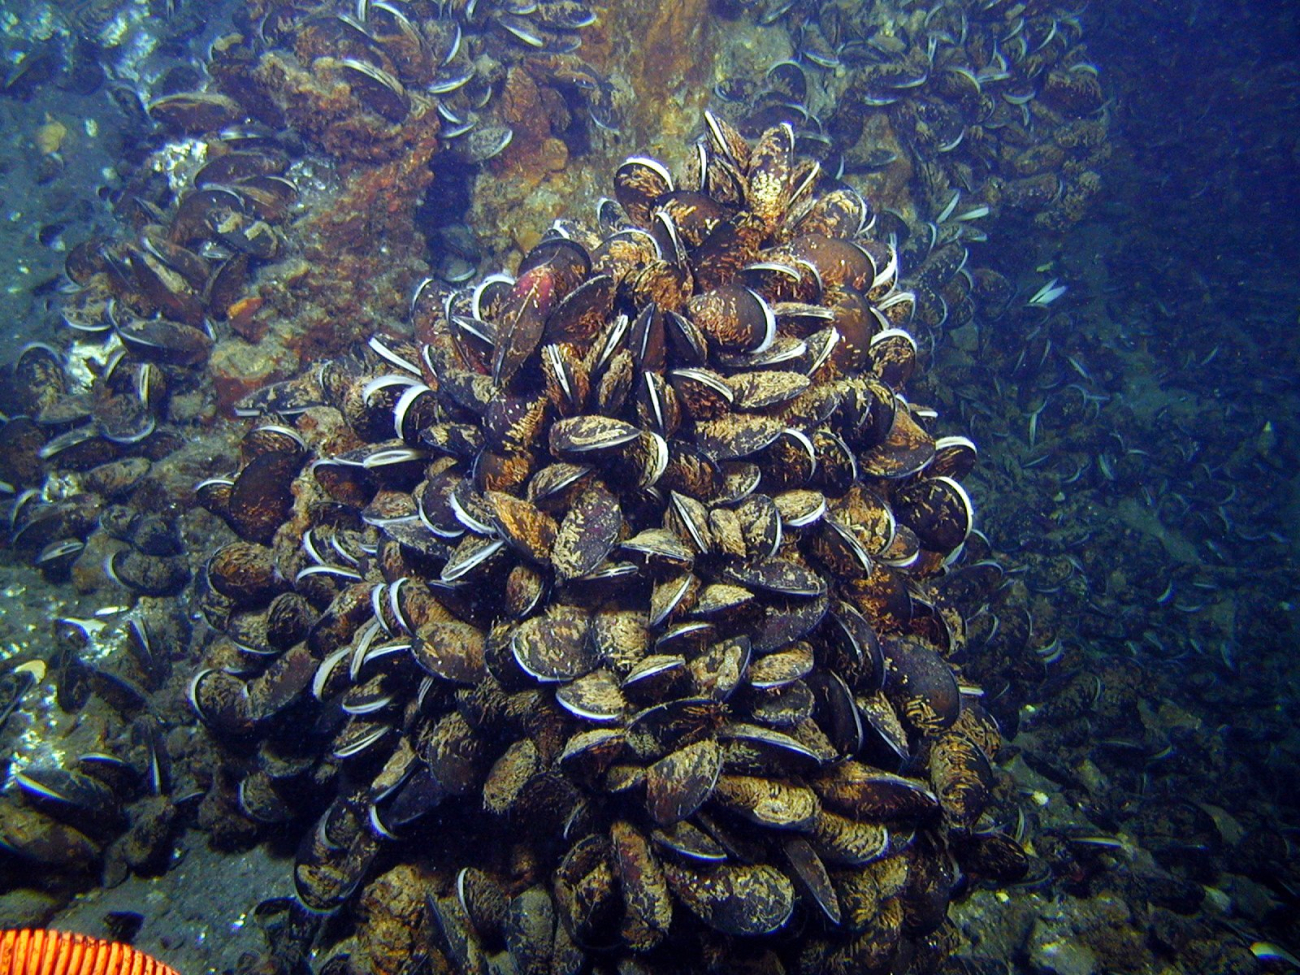 Mussels inhabit every bit of seafloor in order to feed in the ambient flow fromseafloor hotsprings